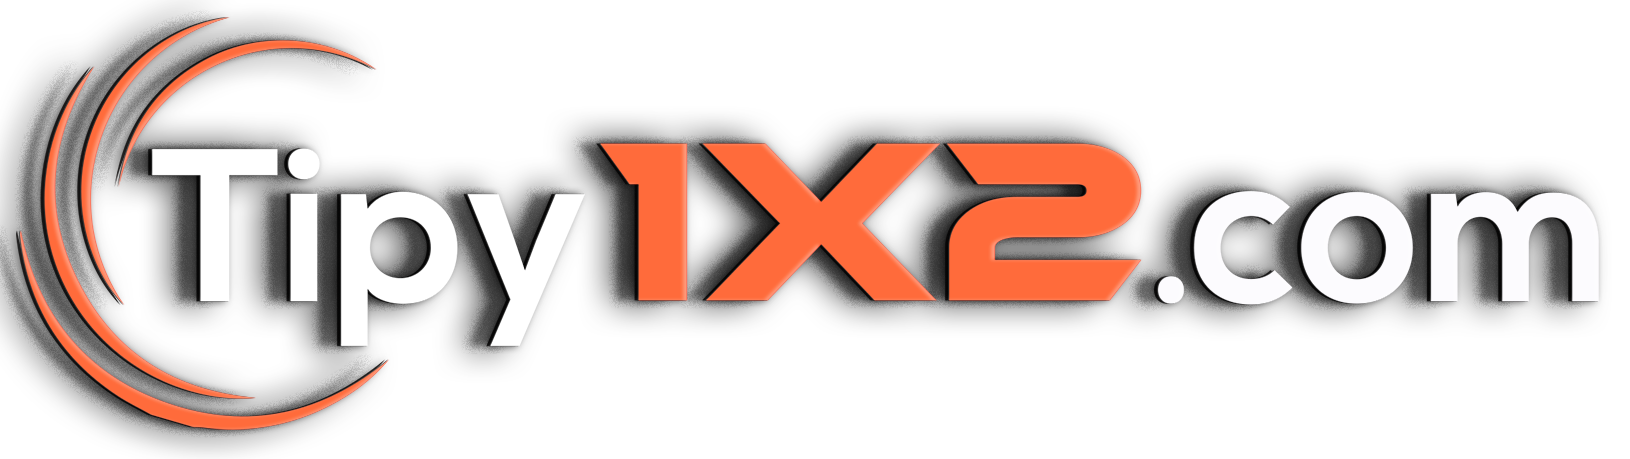 Tipy1x2 logo